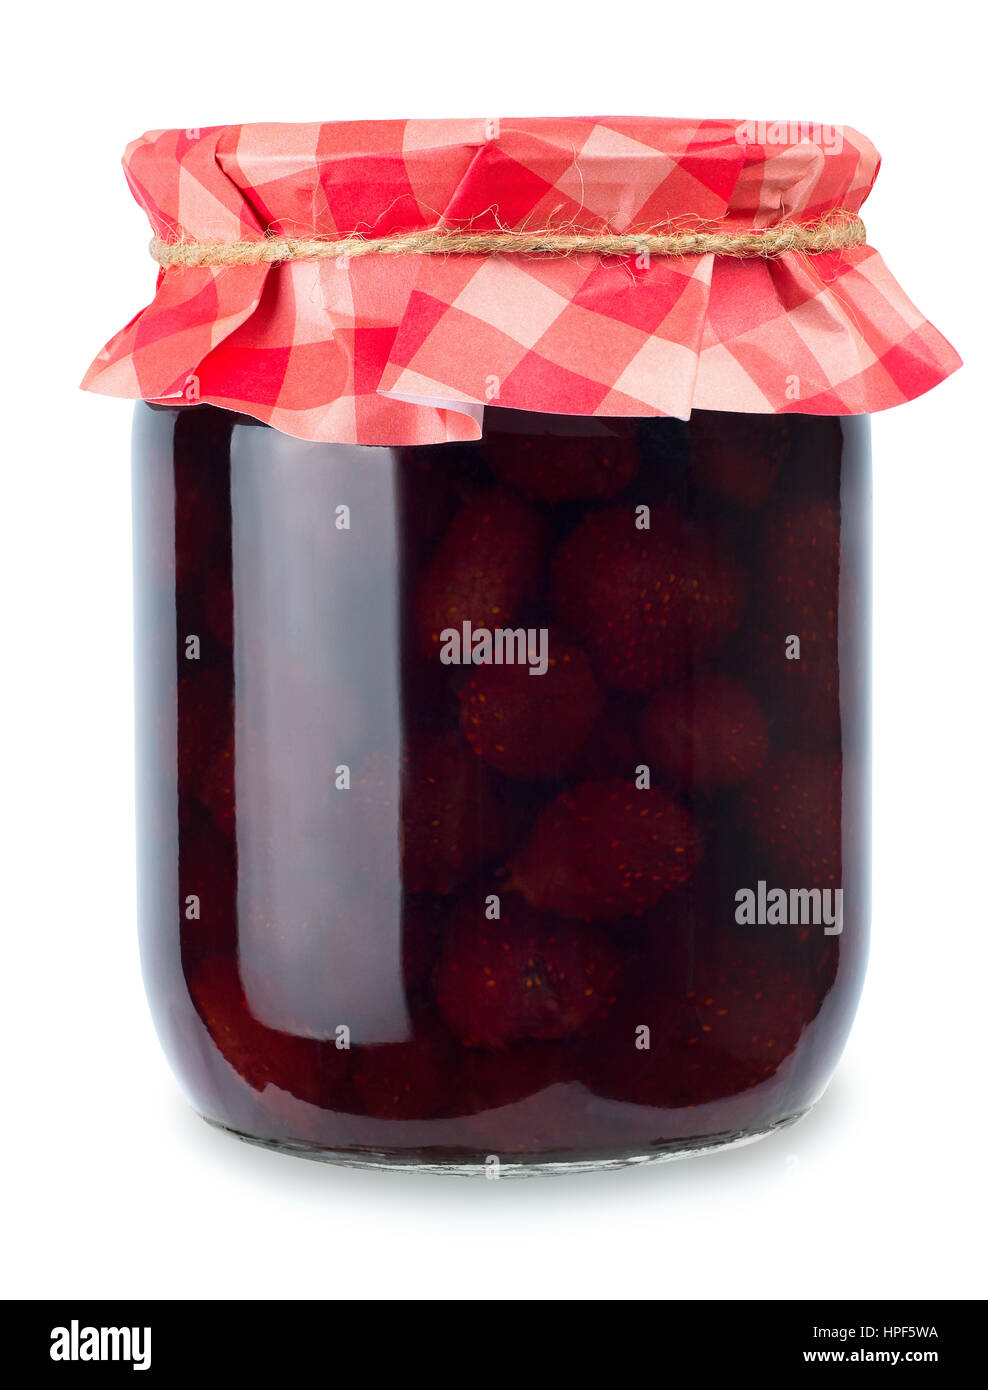 Erdbeer-Marmelade. Glas von Strawberry jam isolierten auf weißen  Hintergrund. Konservierten Früchten. Hausgemachte Erdbeermarmelade in Glas  mit Papier überzogen Stockfotografie - Alamy